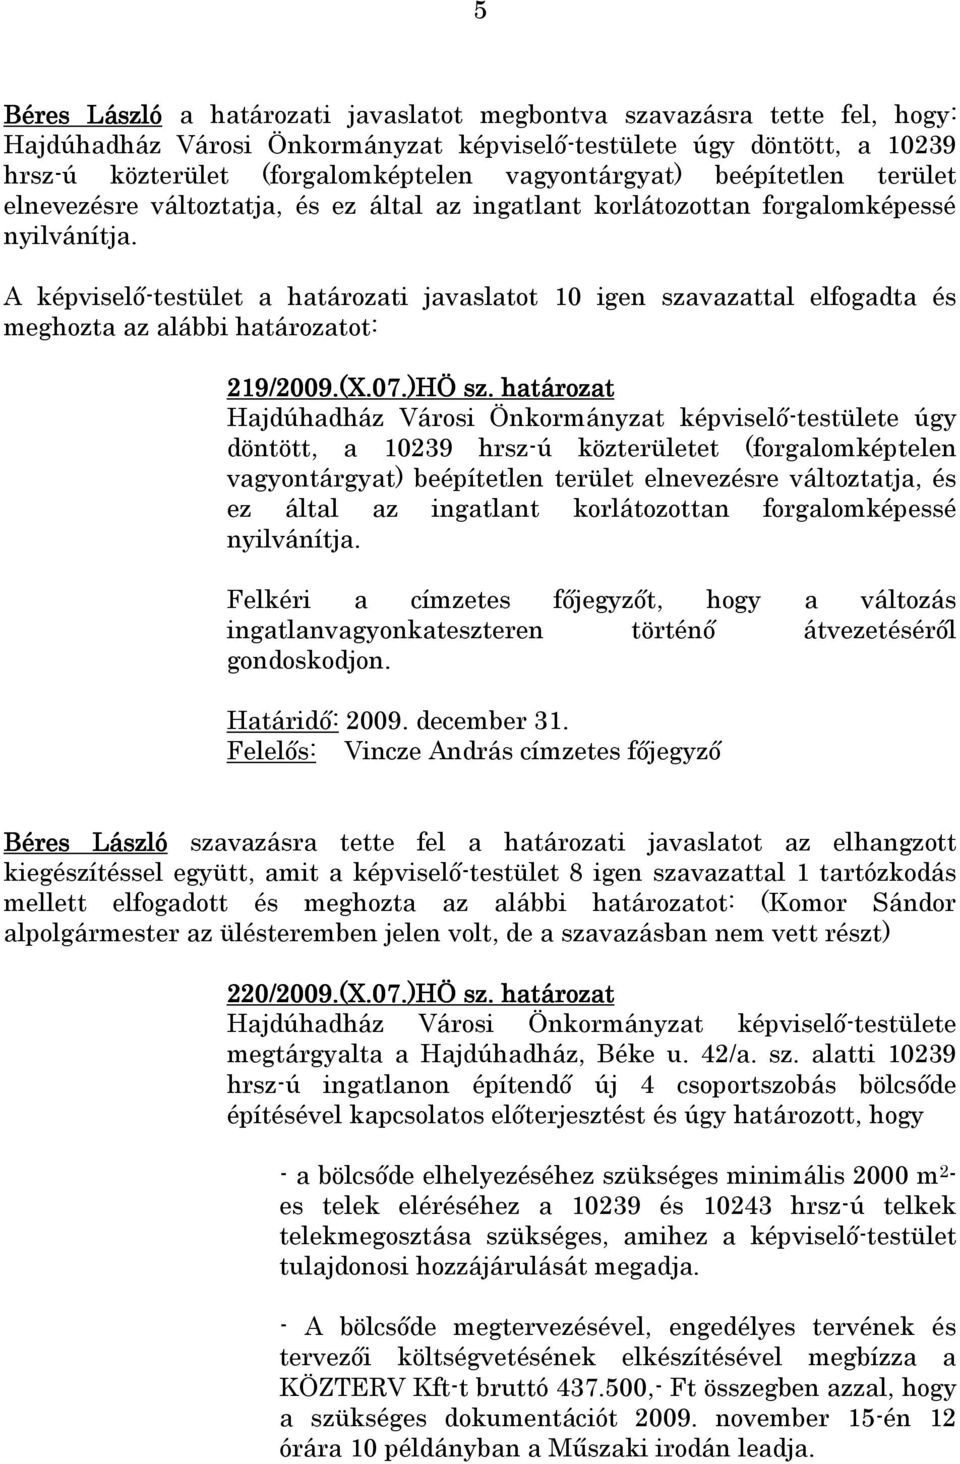 A képviselı-testület a határozati javaslatot 10 igen szavazattal elfogadta és meghozta az alábbi határozatot: 219/2009.(X.07.)HÖ sz.